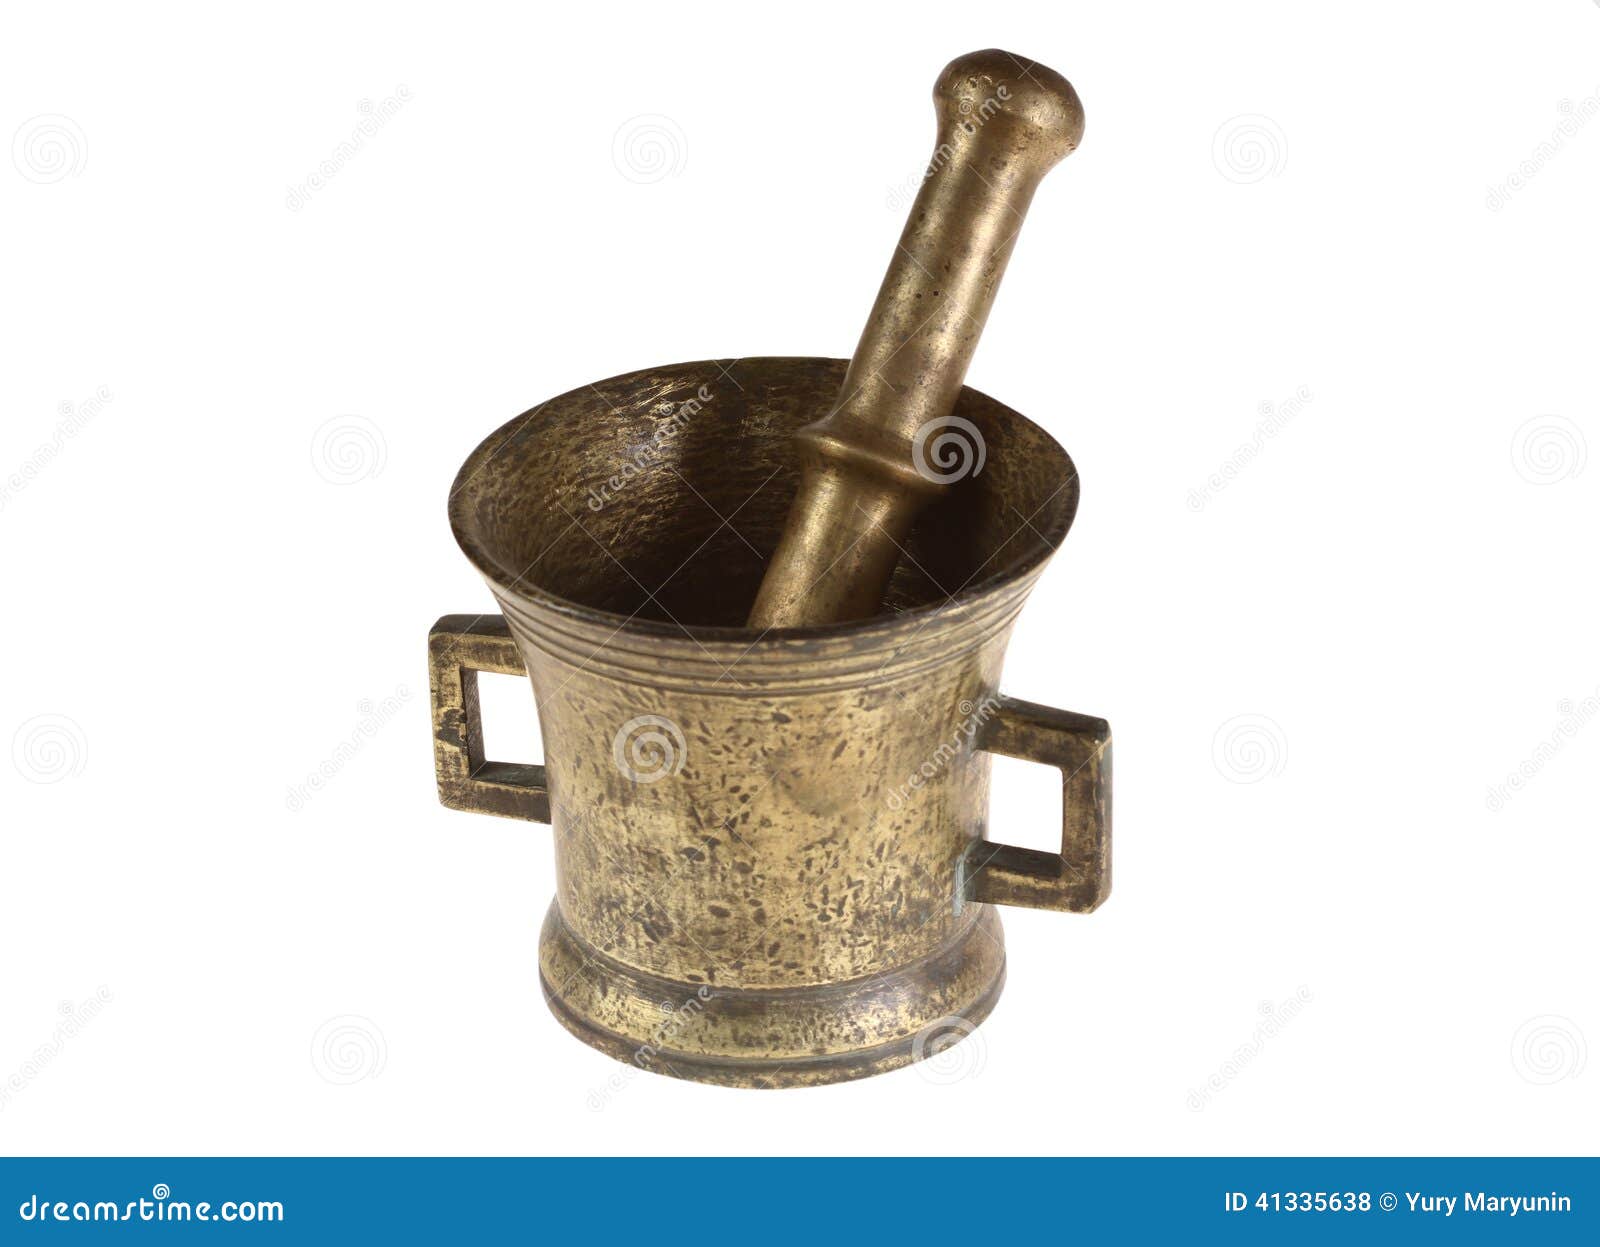 ancient bronze pounder